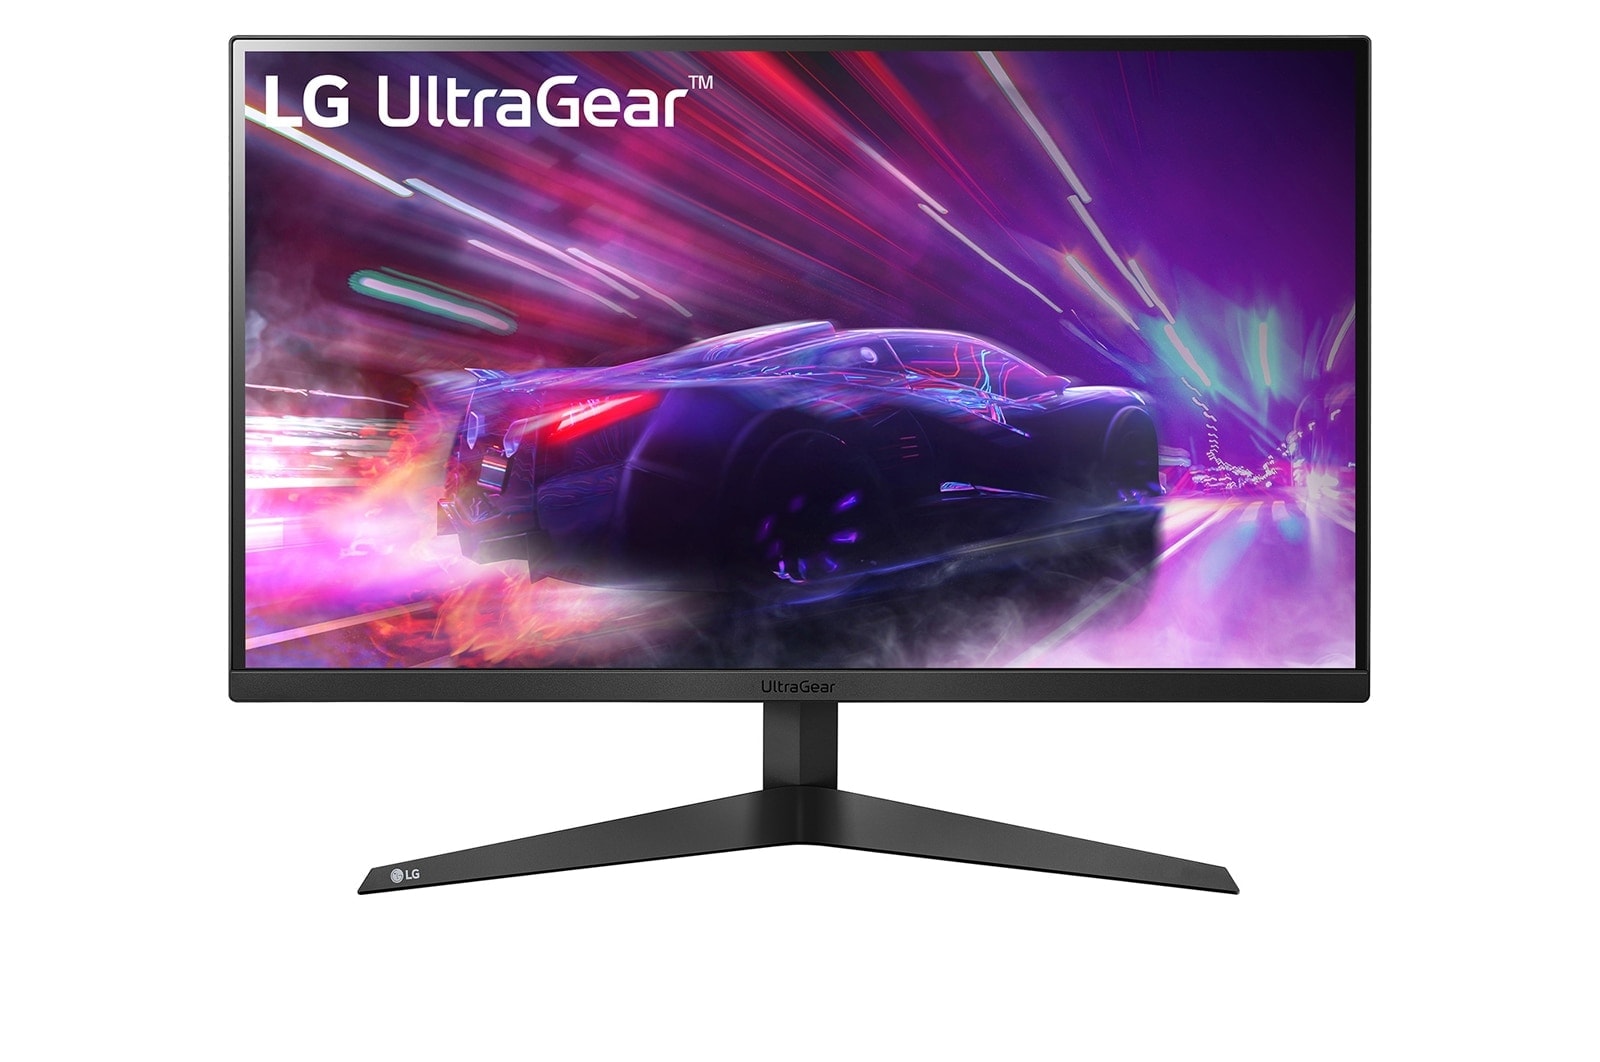 Màn hình Gaming LG UltraGear 24GQ50F-B 23.8 inch FHD VA 165Hz